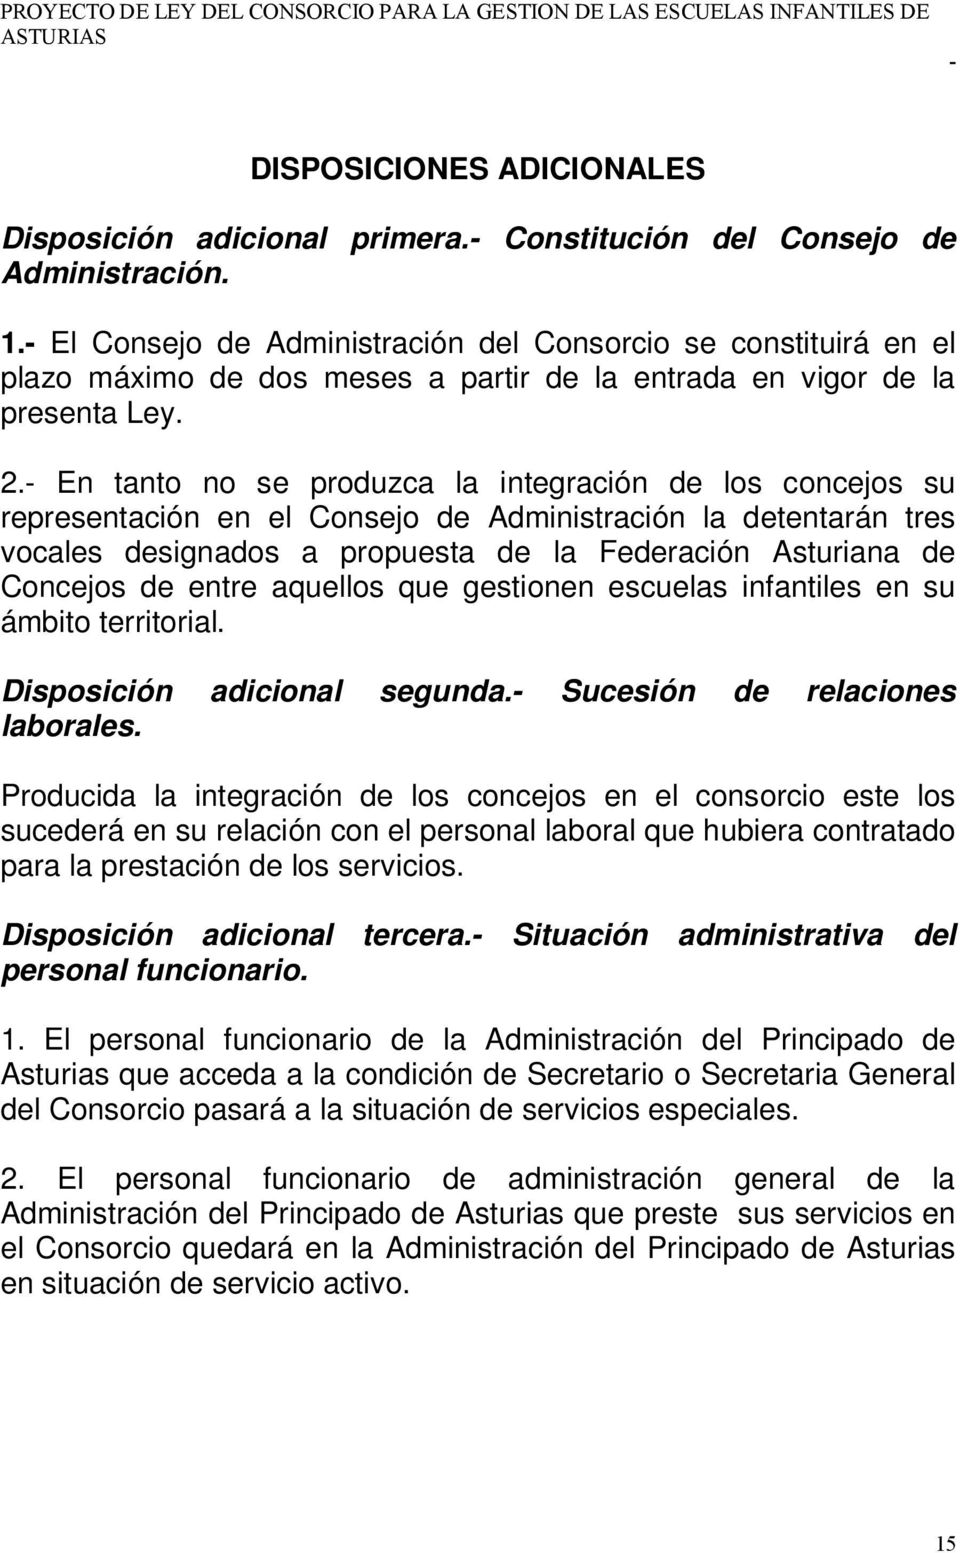 En tanto no se produzca la integración de los concejos su representación en el Consejo de Administración la detentarán tres vocales designados a propuesta de la Federación Asturiana de Concejos de